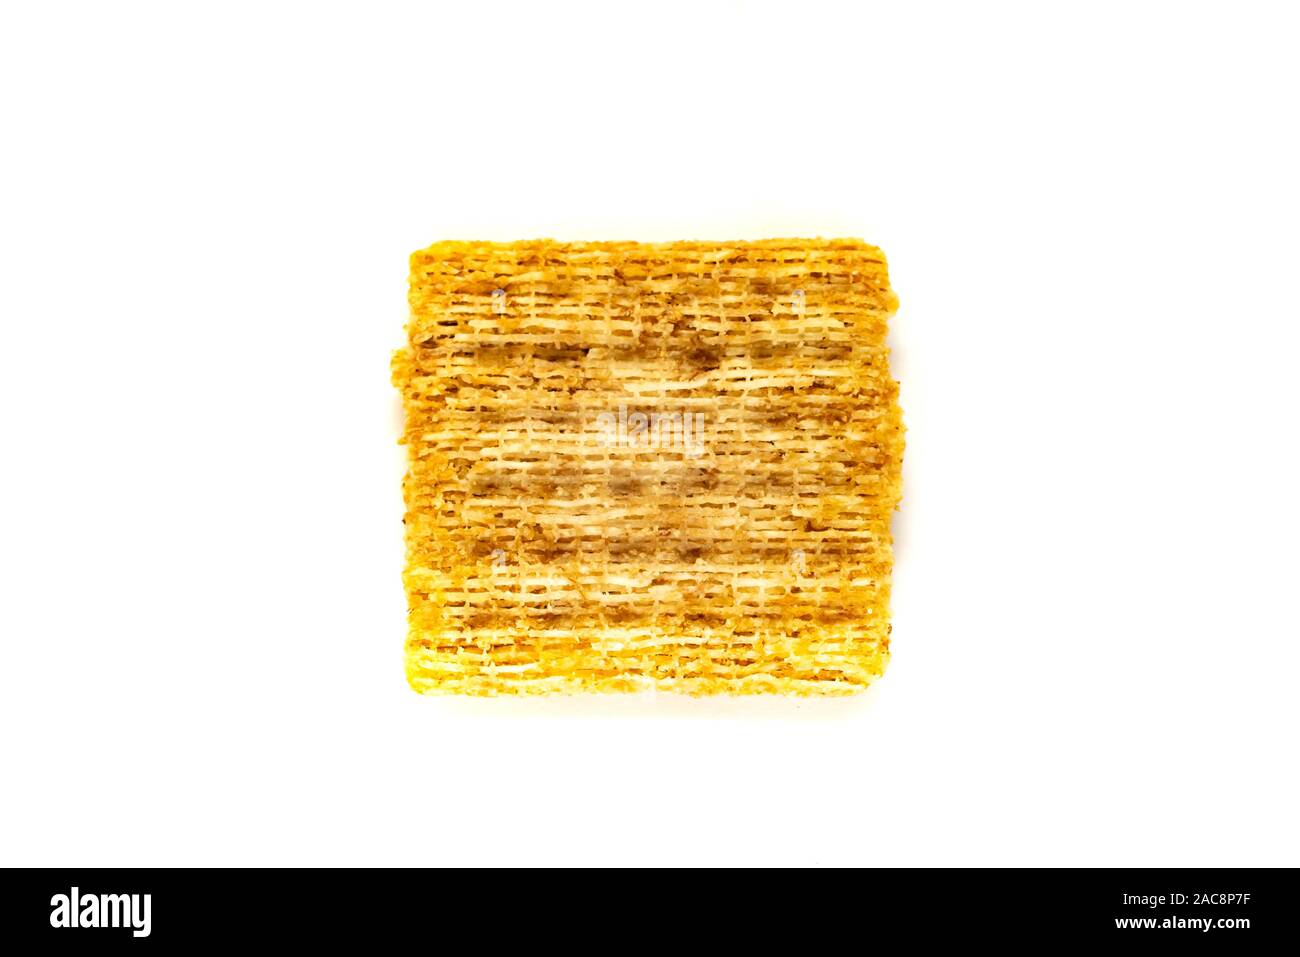 Eine einzelne Vorlage Triscuit Vollkorn Cracker, mit Meersalz, isoliert auf Weiss. Stockfoto